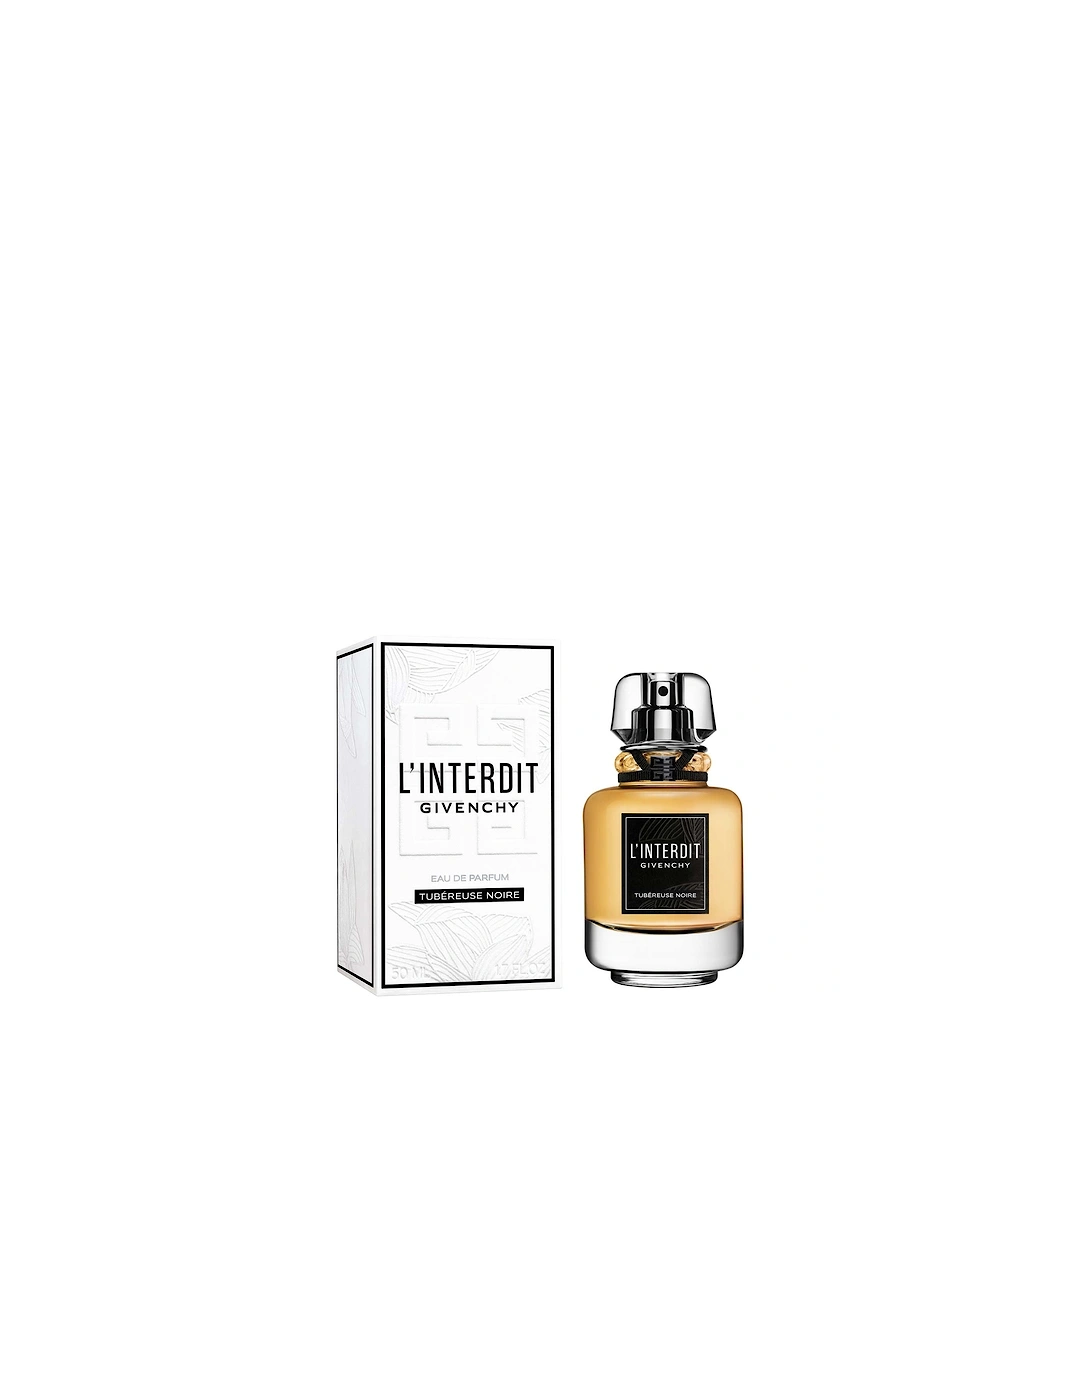 Limited Edition L'Interdit Tubéreuse Noire Eau de Parfum 50ml, 2 of 1